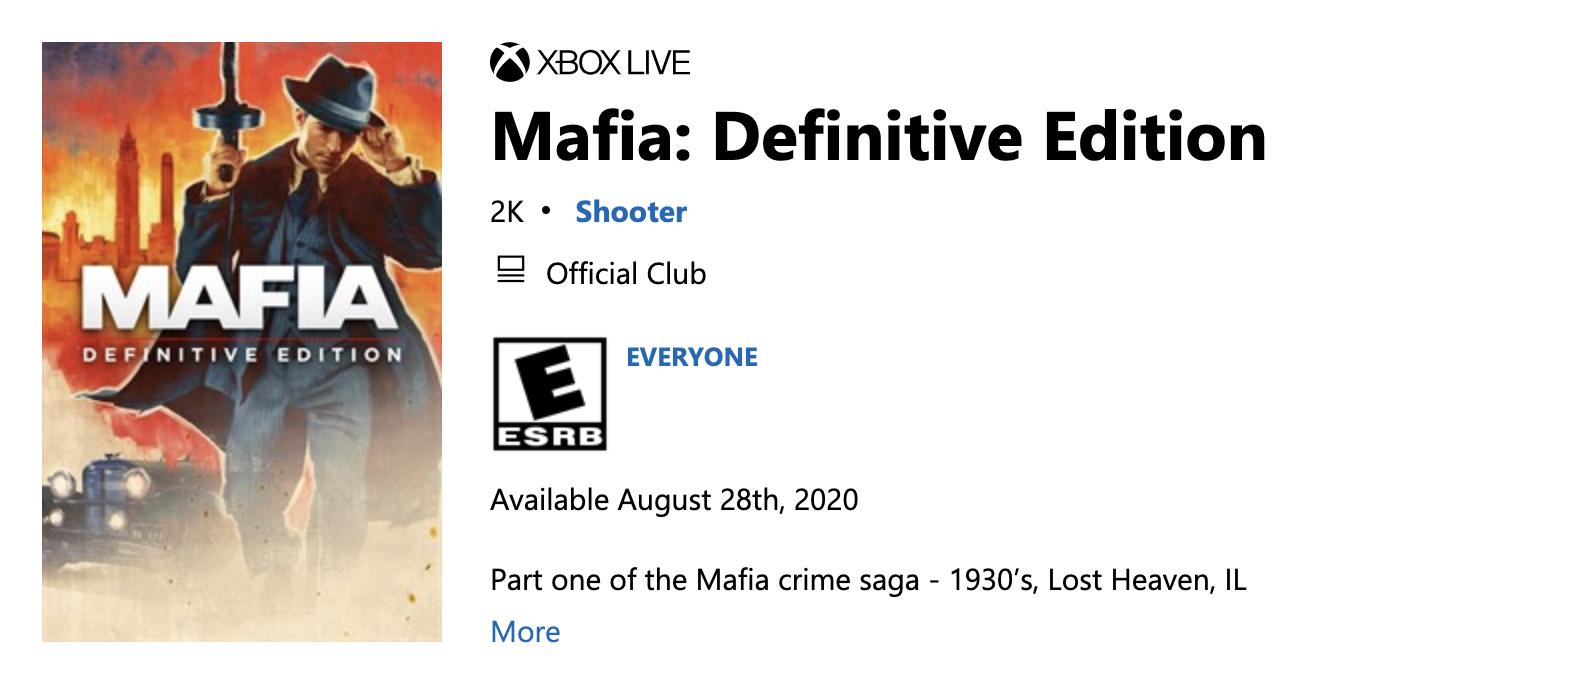 Microsoft store showing Mafia: Definitive Edition